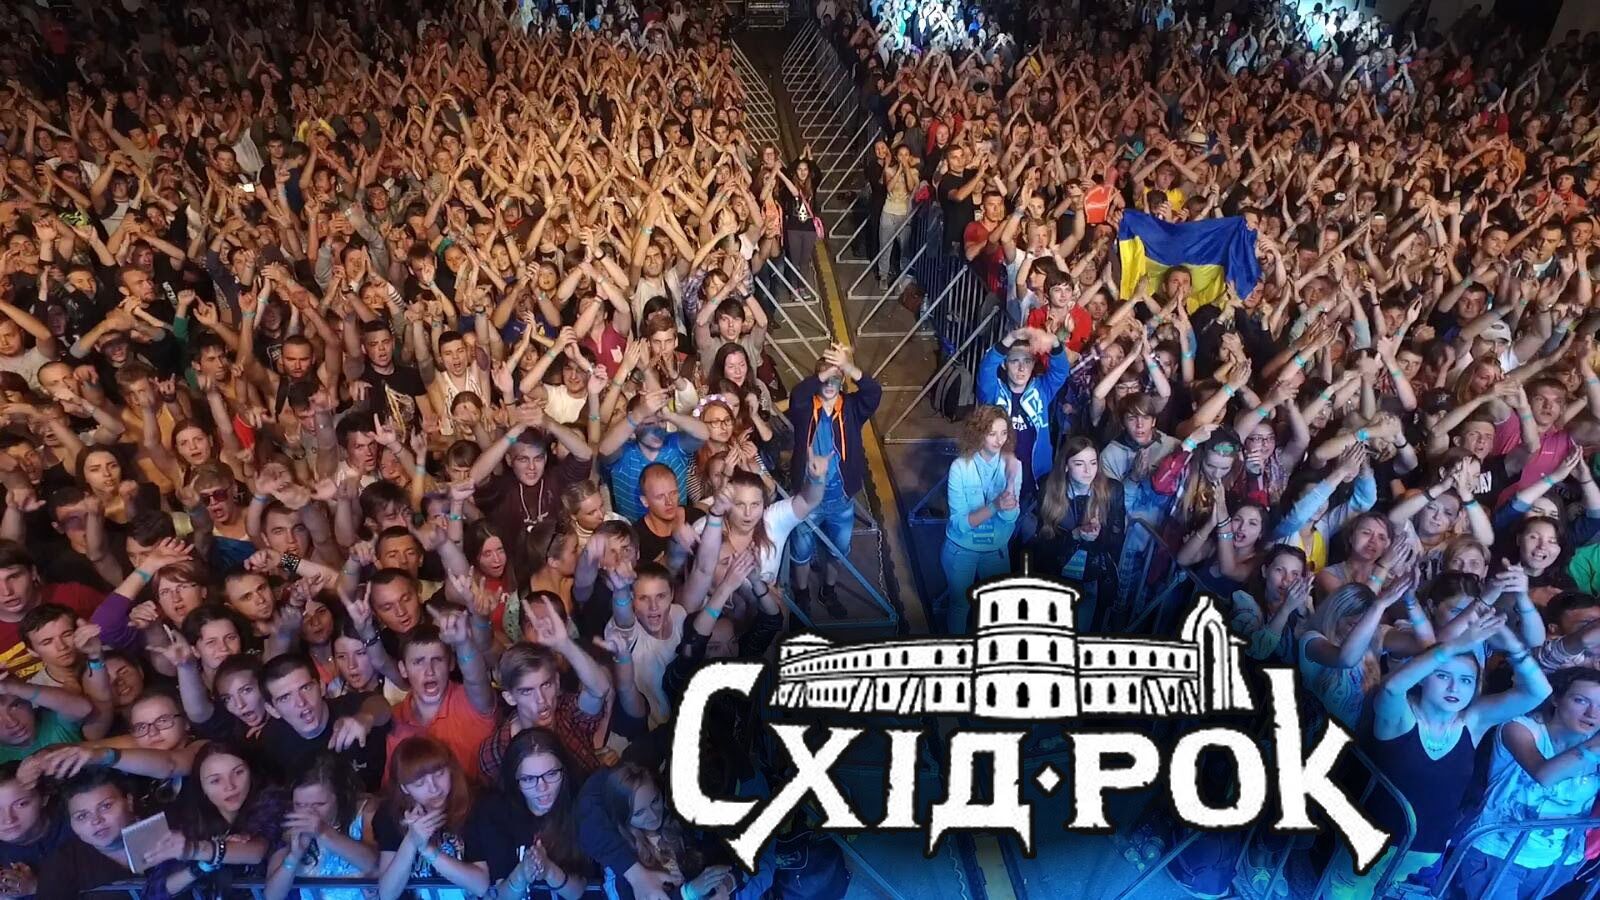 Музыкальный фестиваль "СХІД-РОК 2018"